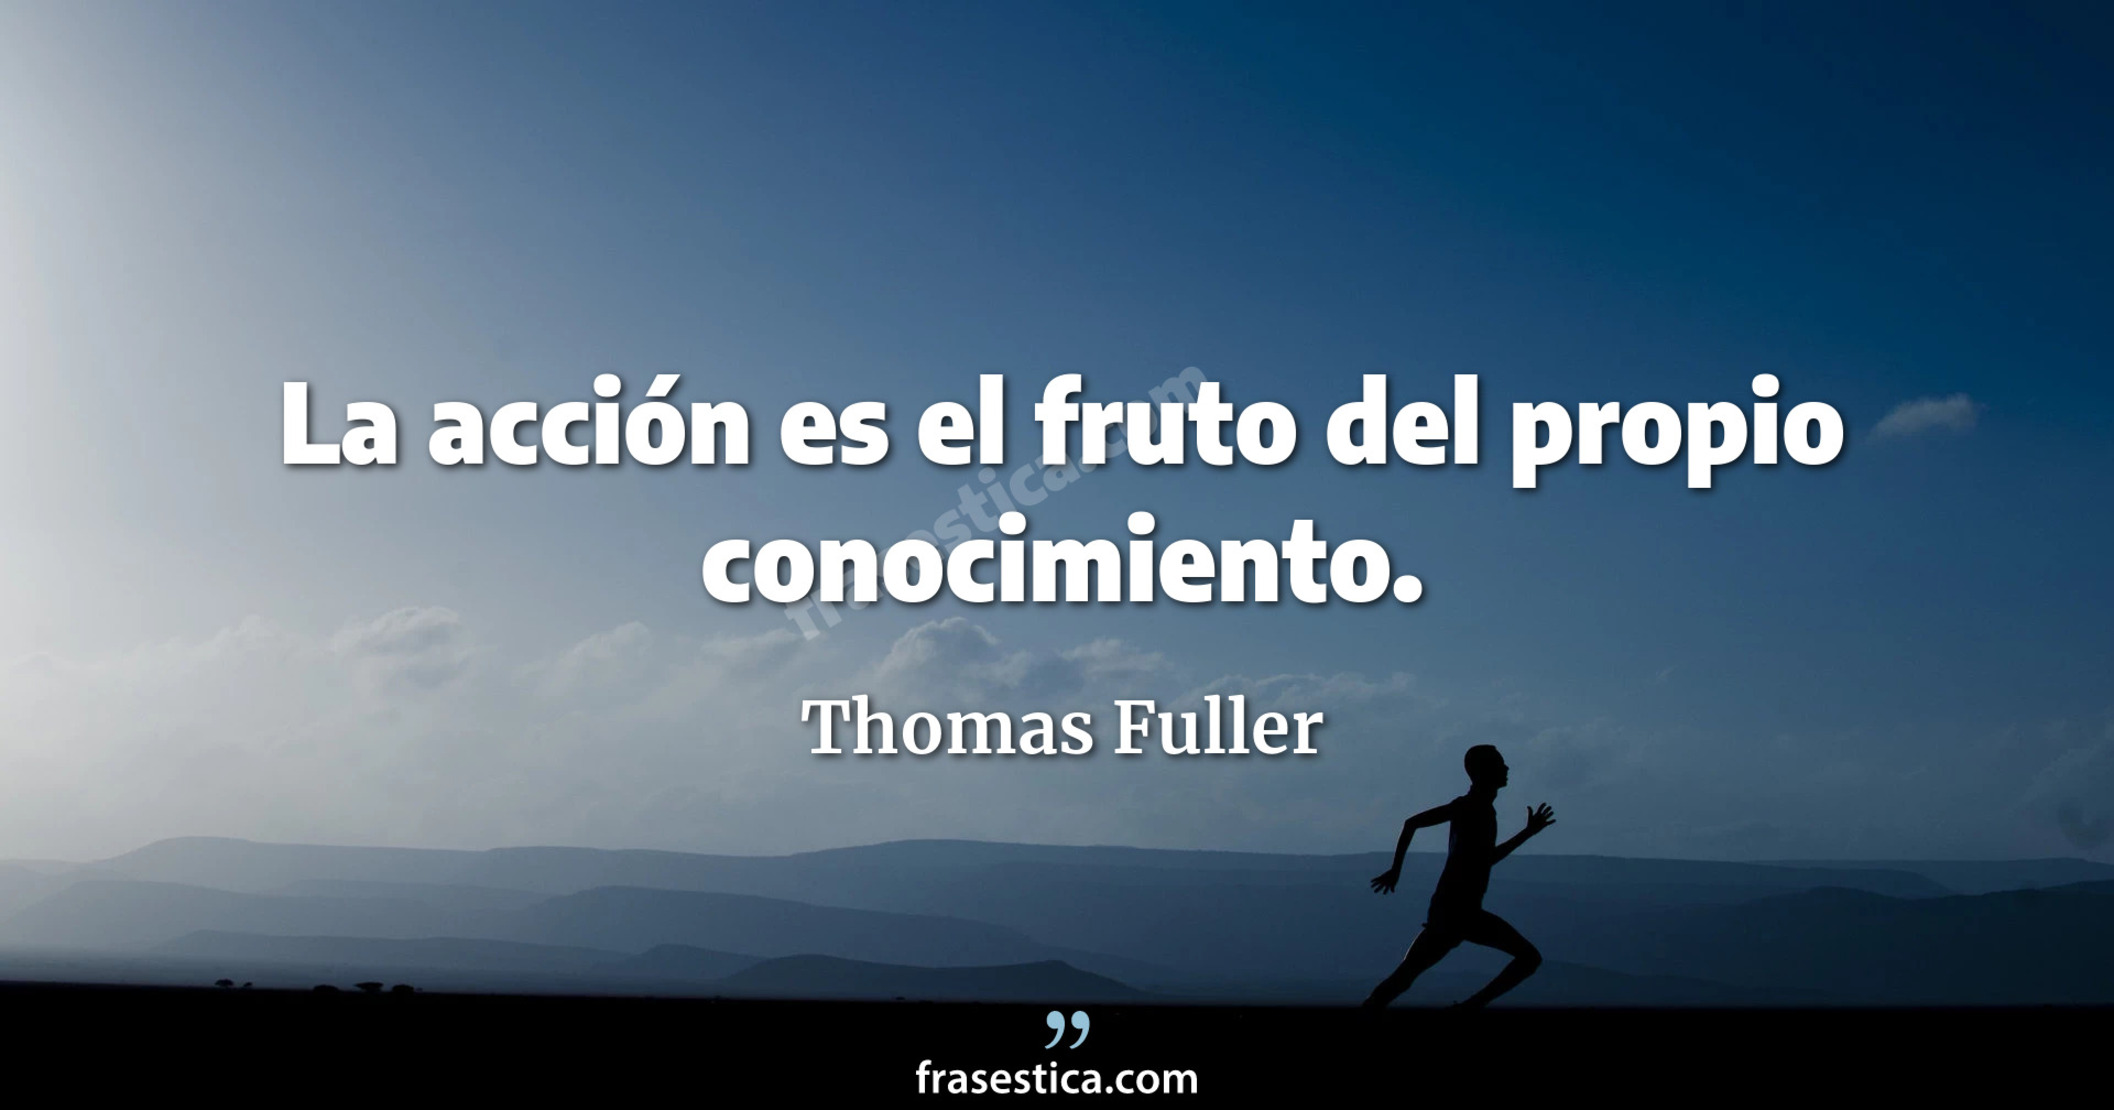 La acción es el fruto del propio conocimiento. - Thomas Fuller